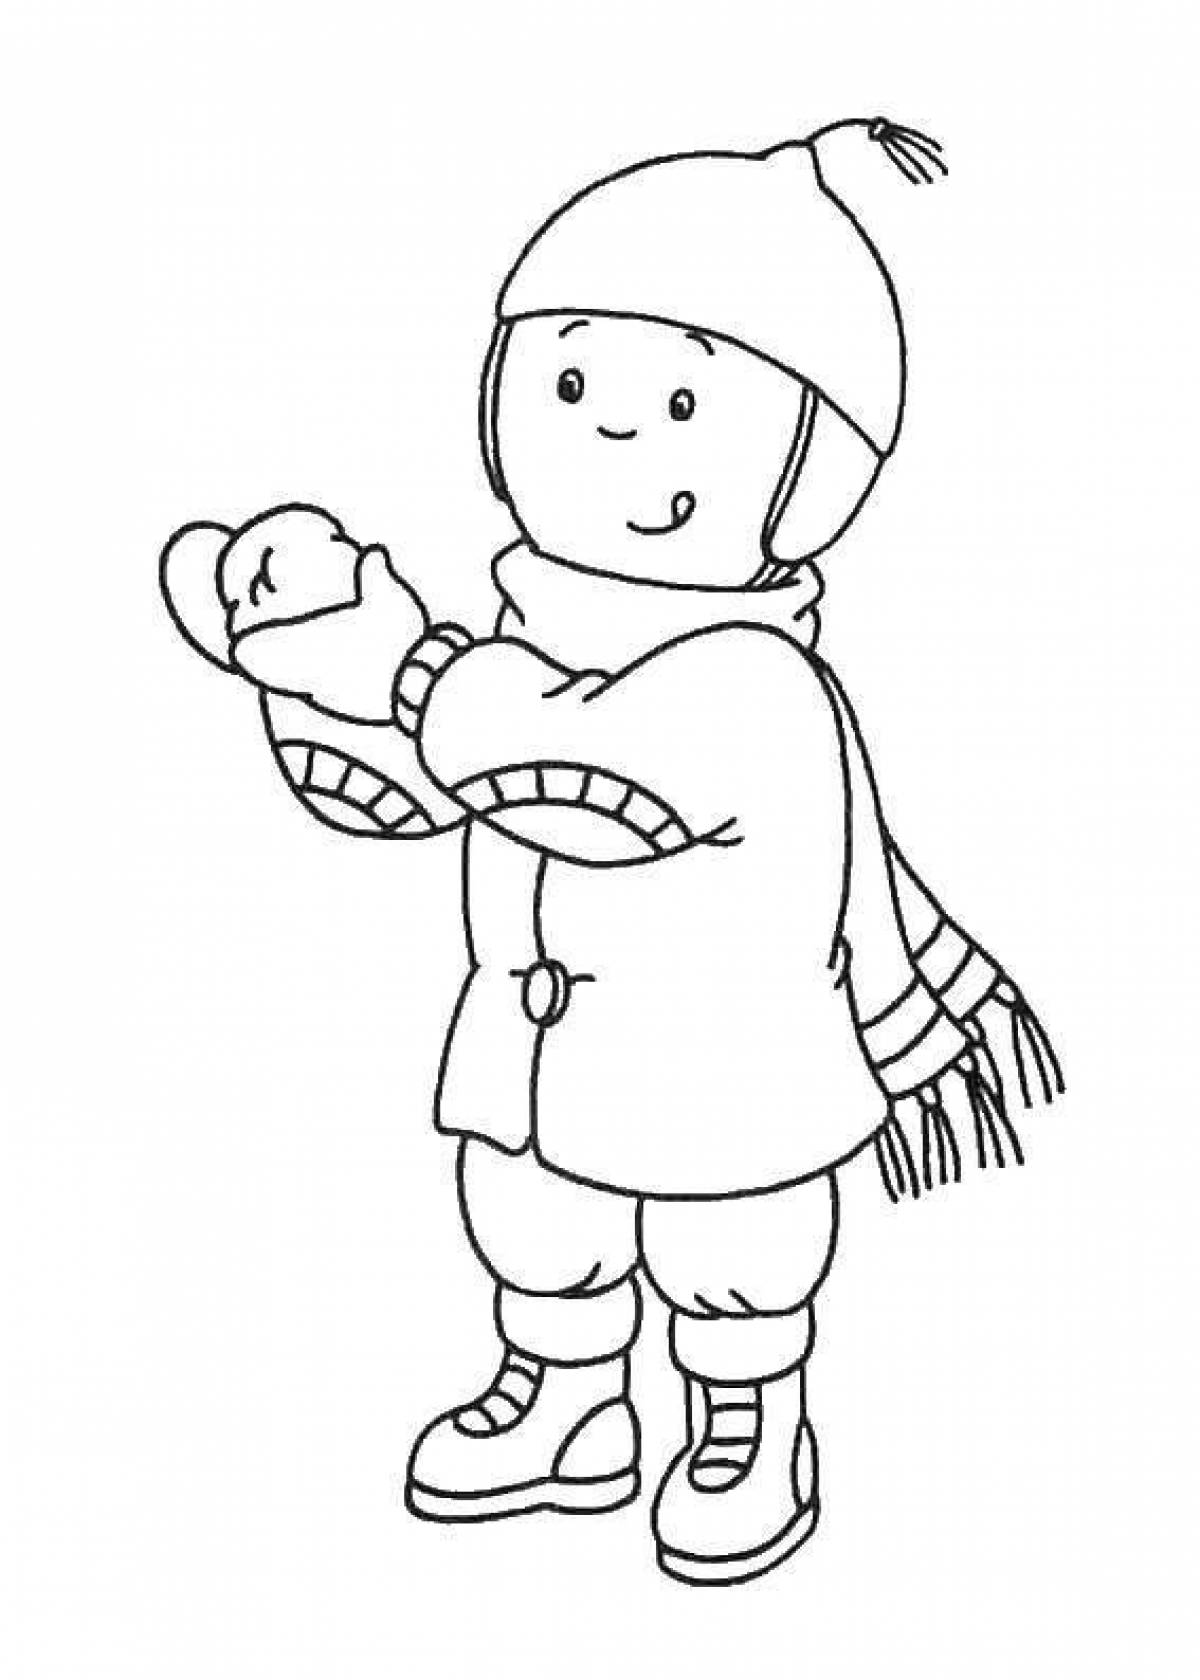 Красочная раскраска для детей мальчик в зимней одежде